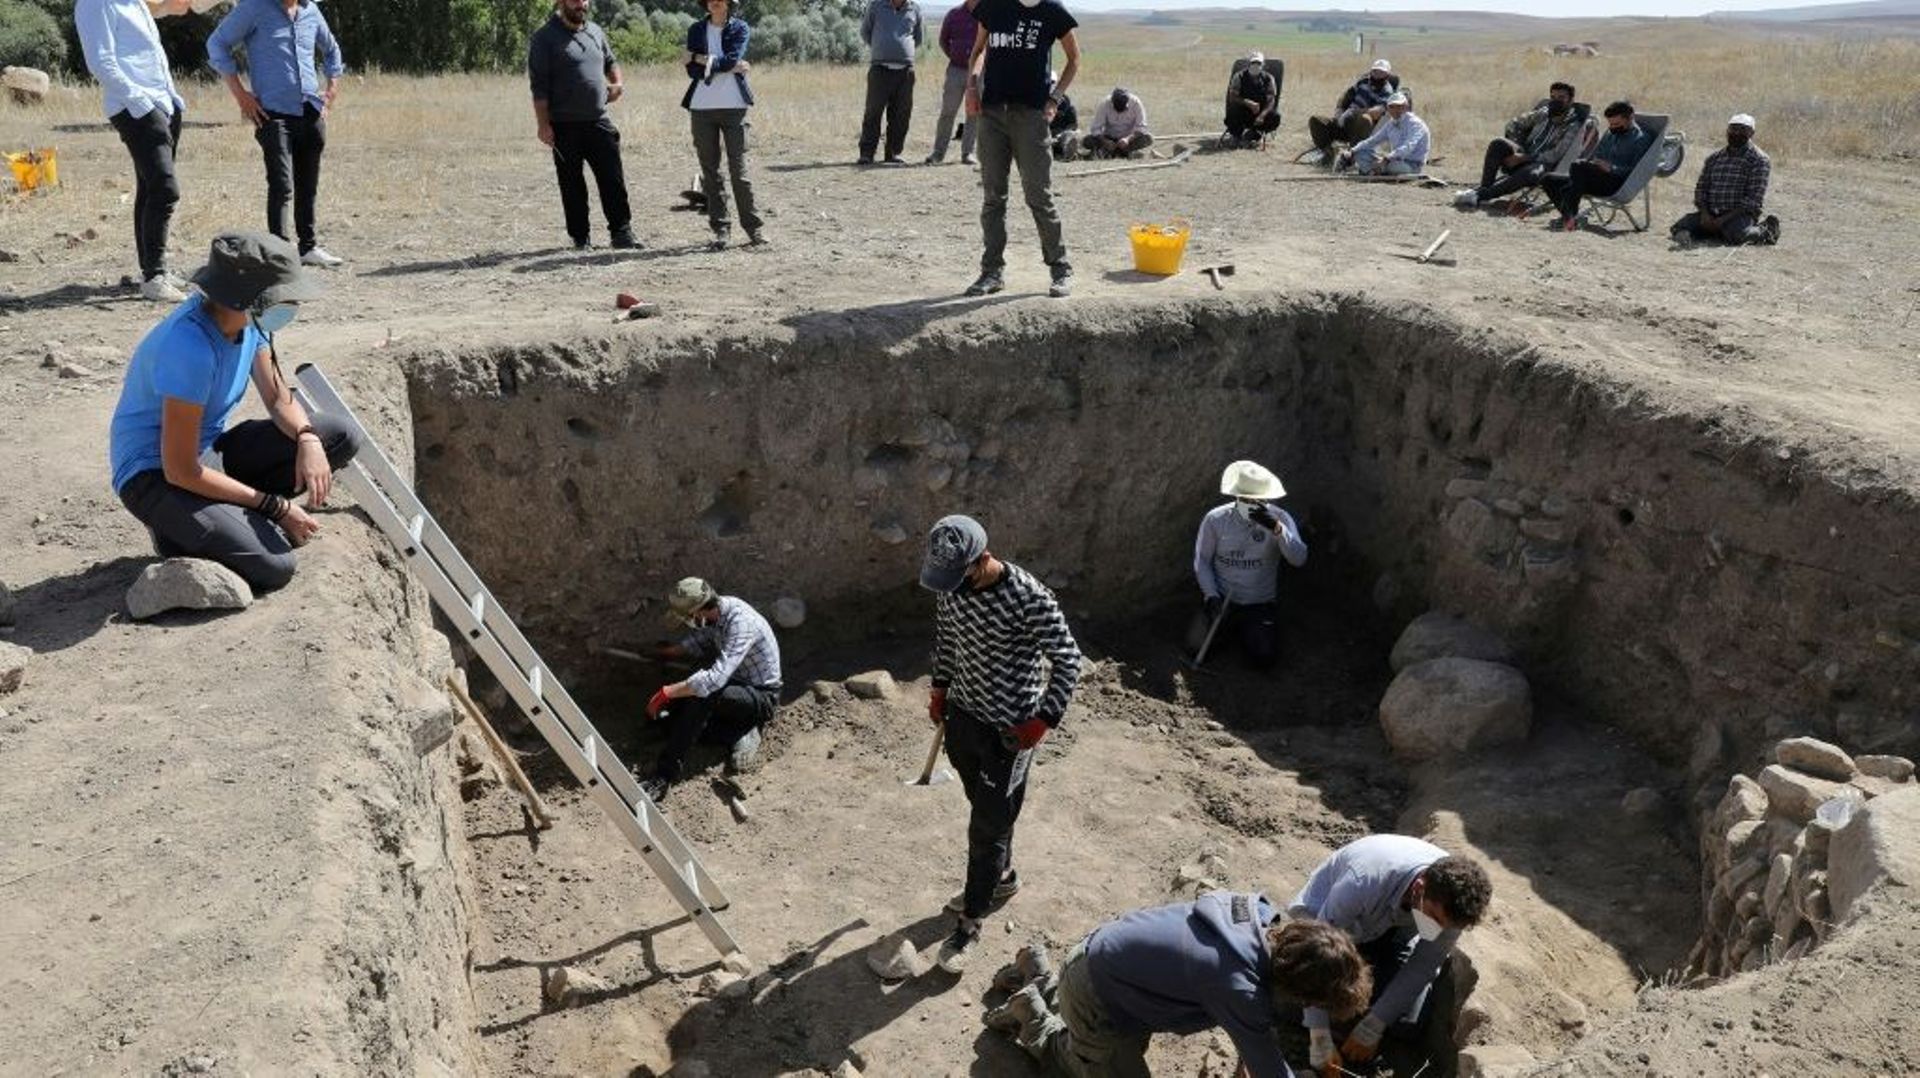 Les archéologistes travaillent sur les vestiges d'un palais Hittite avec ses céramiques et verreries luxueuses, découverts sur le site d'Usakli Hoyuk près de Yozgat le 21 septembre 2021